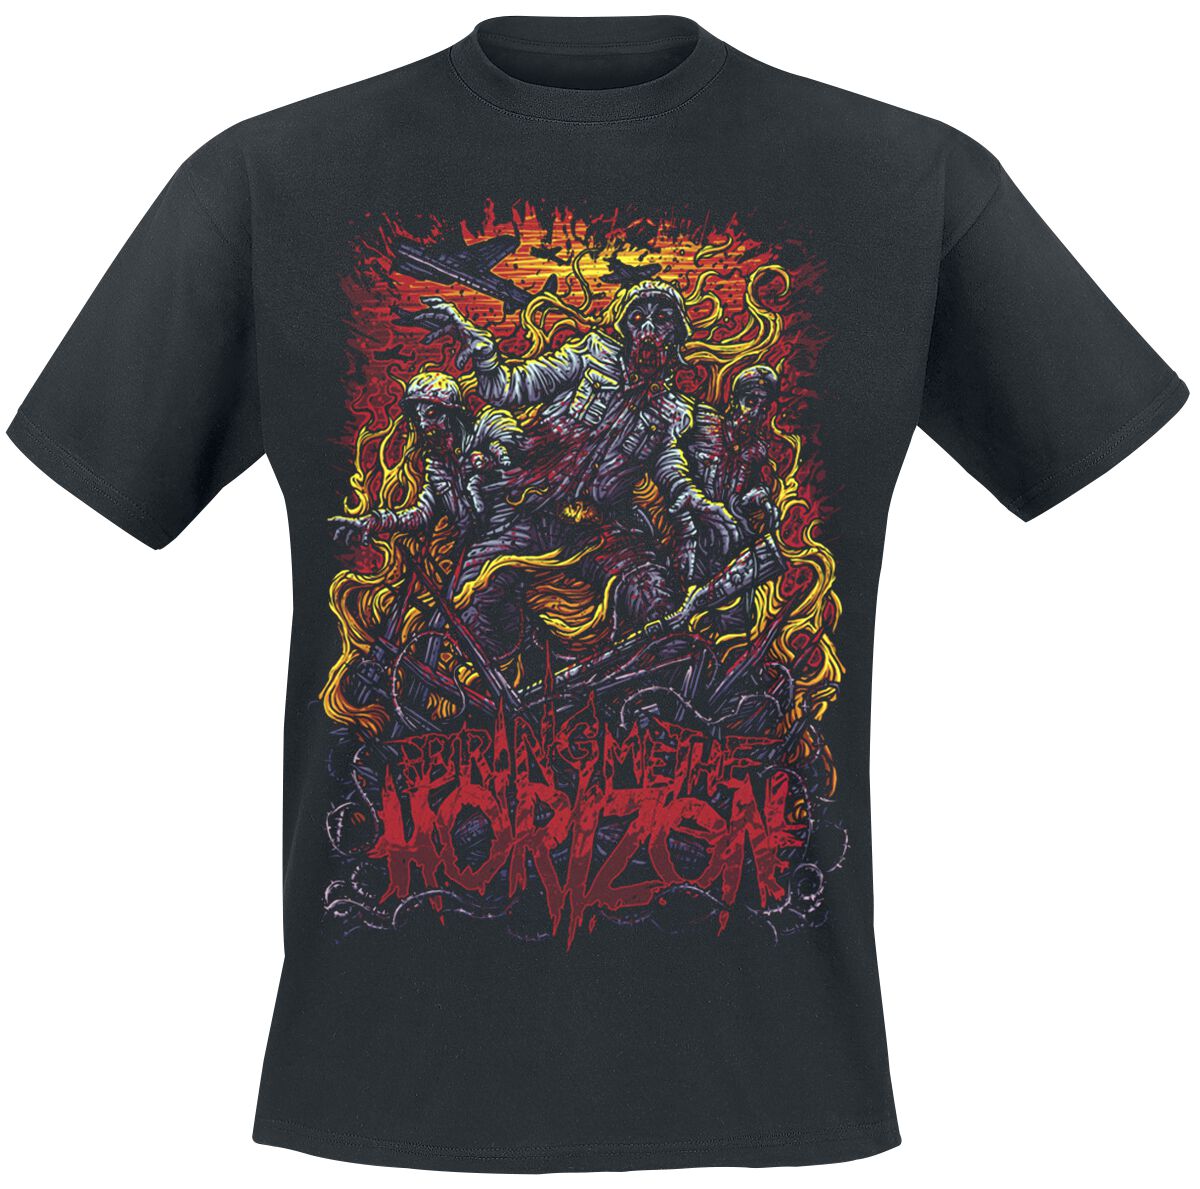 Bring Me The Horizon T-Shirt - Zombie Army - S bis XXL - für Männer - Größe L - schwarz  - Lizenziertes Merchandise!